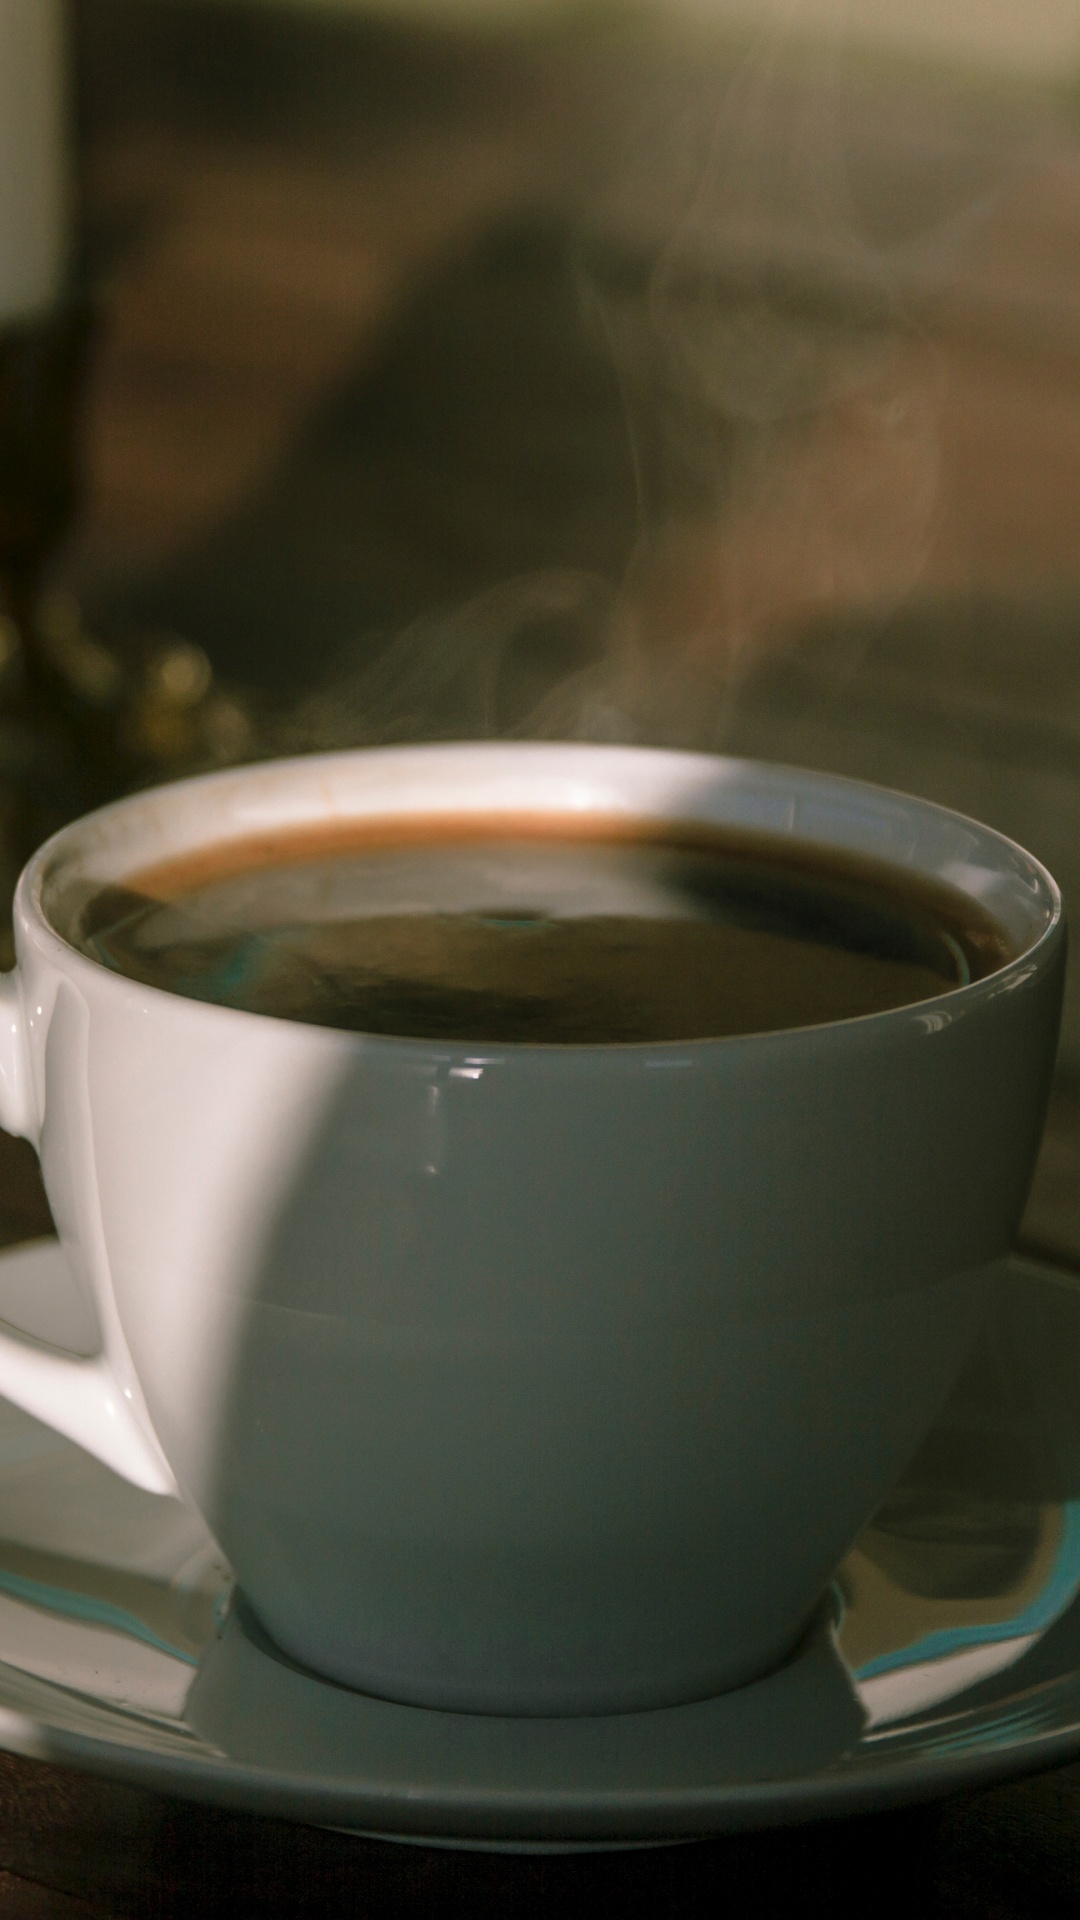 卡布奇诺咖啡, 咖啡杯, 器皿, 古巴咖啡, 蒲公英咖啡 壁纸 1080x1920 允许